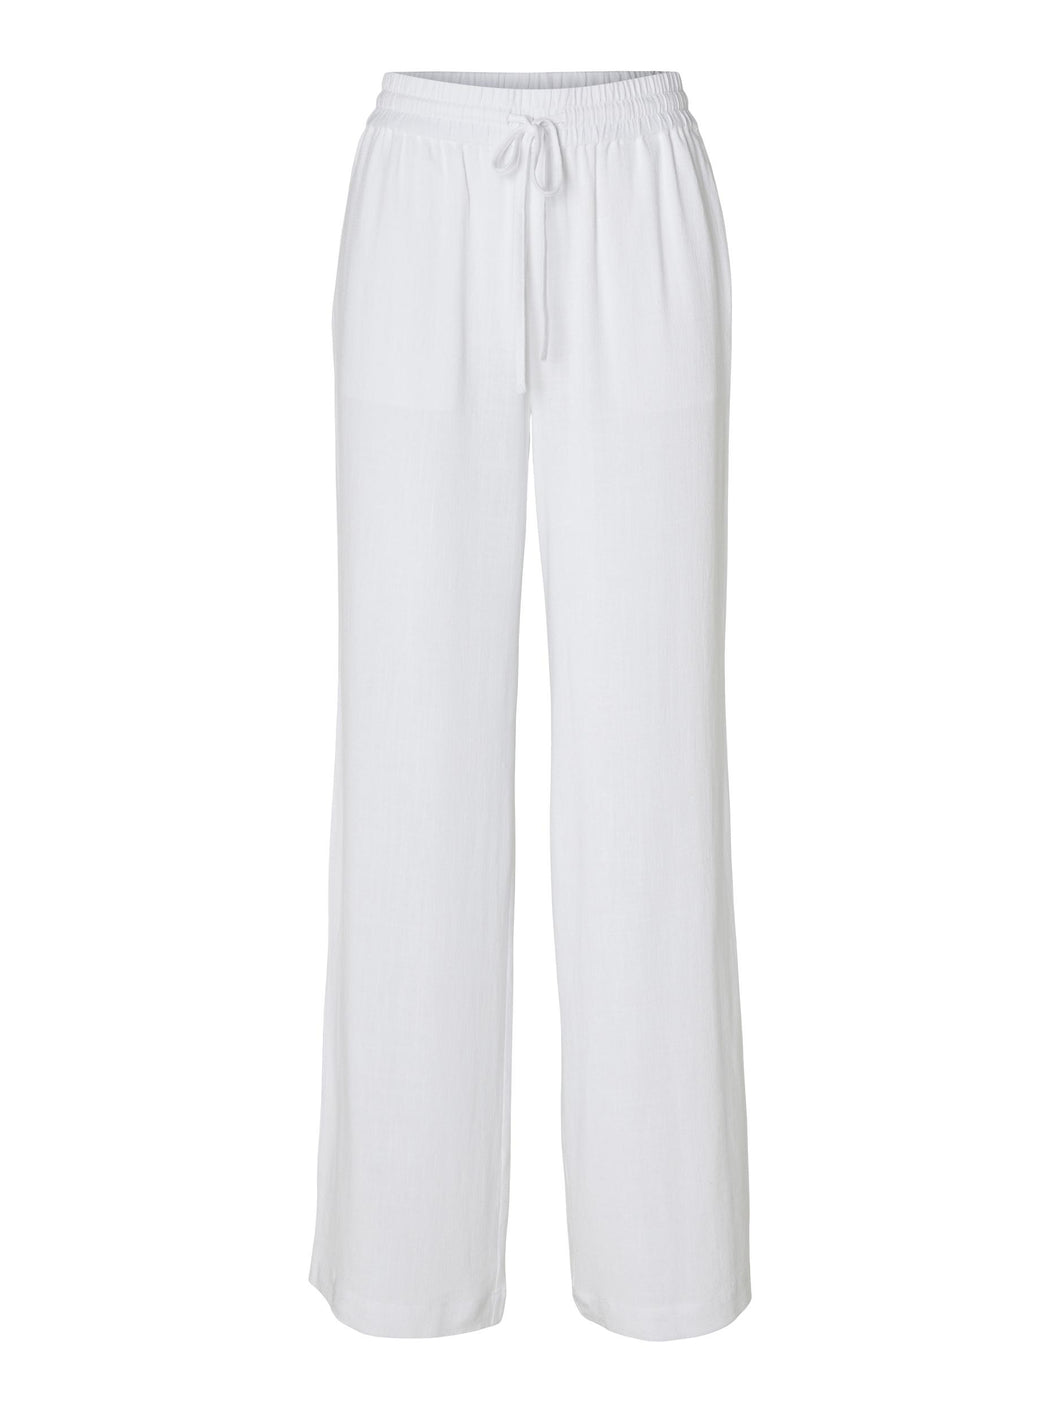 SLFVIVA-GULIA Linen Pants, bright white